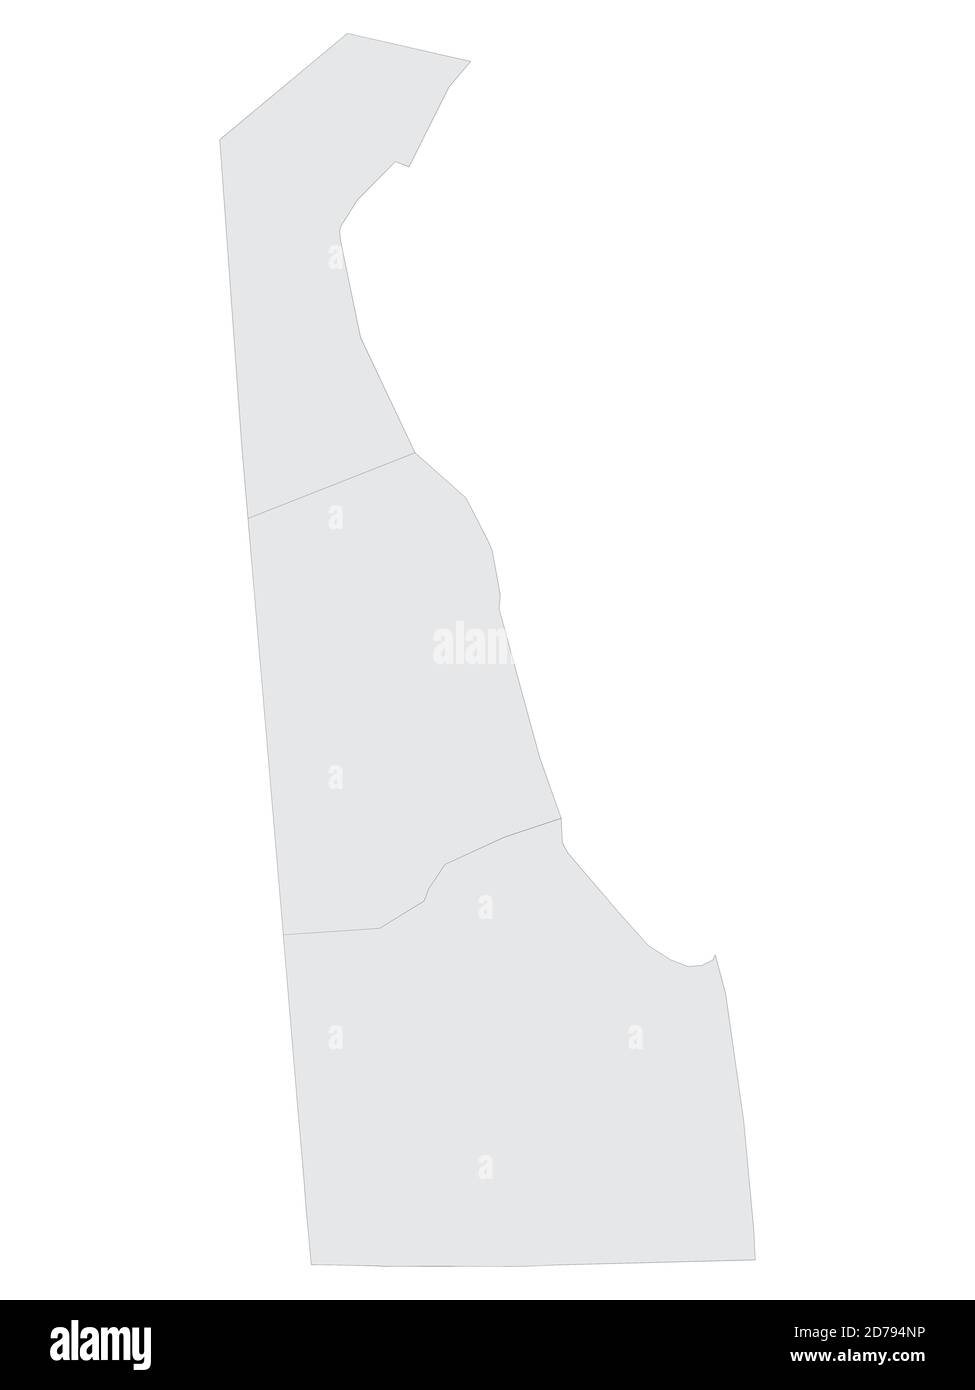 Gray Flat Election Counties Karte der Vereinigten Staaten von Amerika Bundesstaat Delaware Stock Vektor